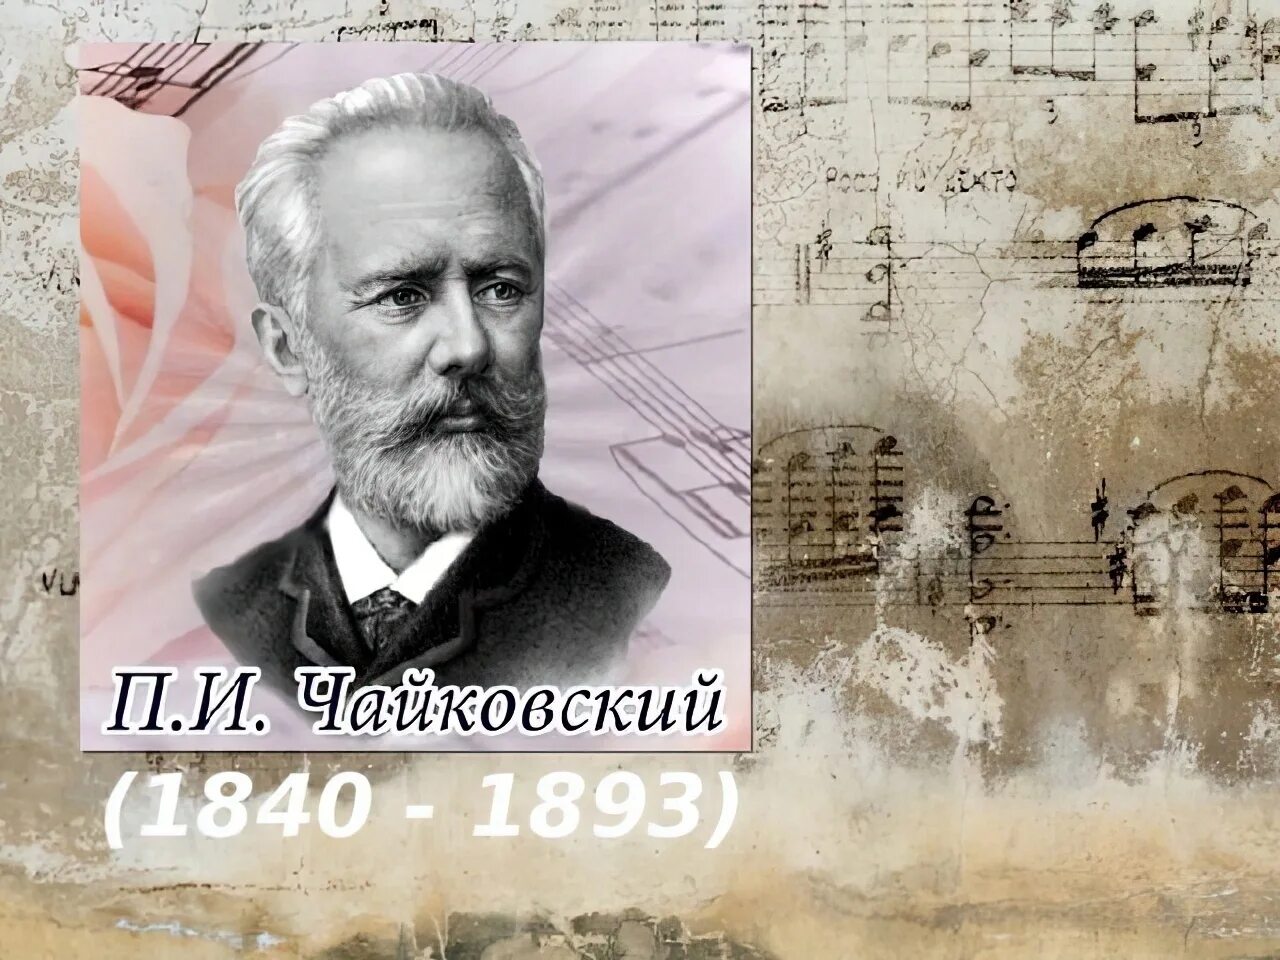 Чайковский портрет композитора.